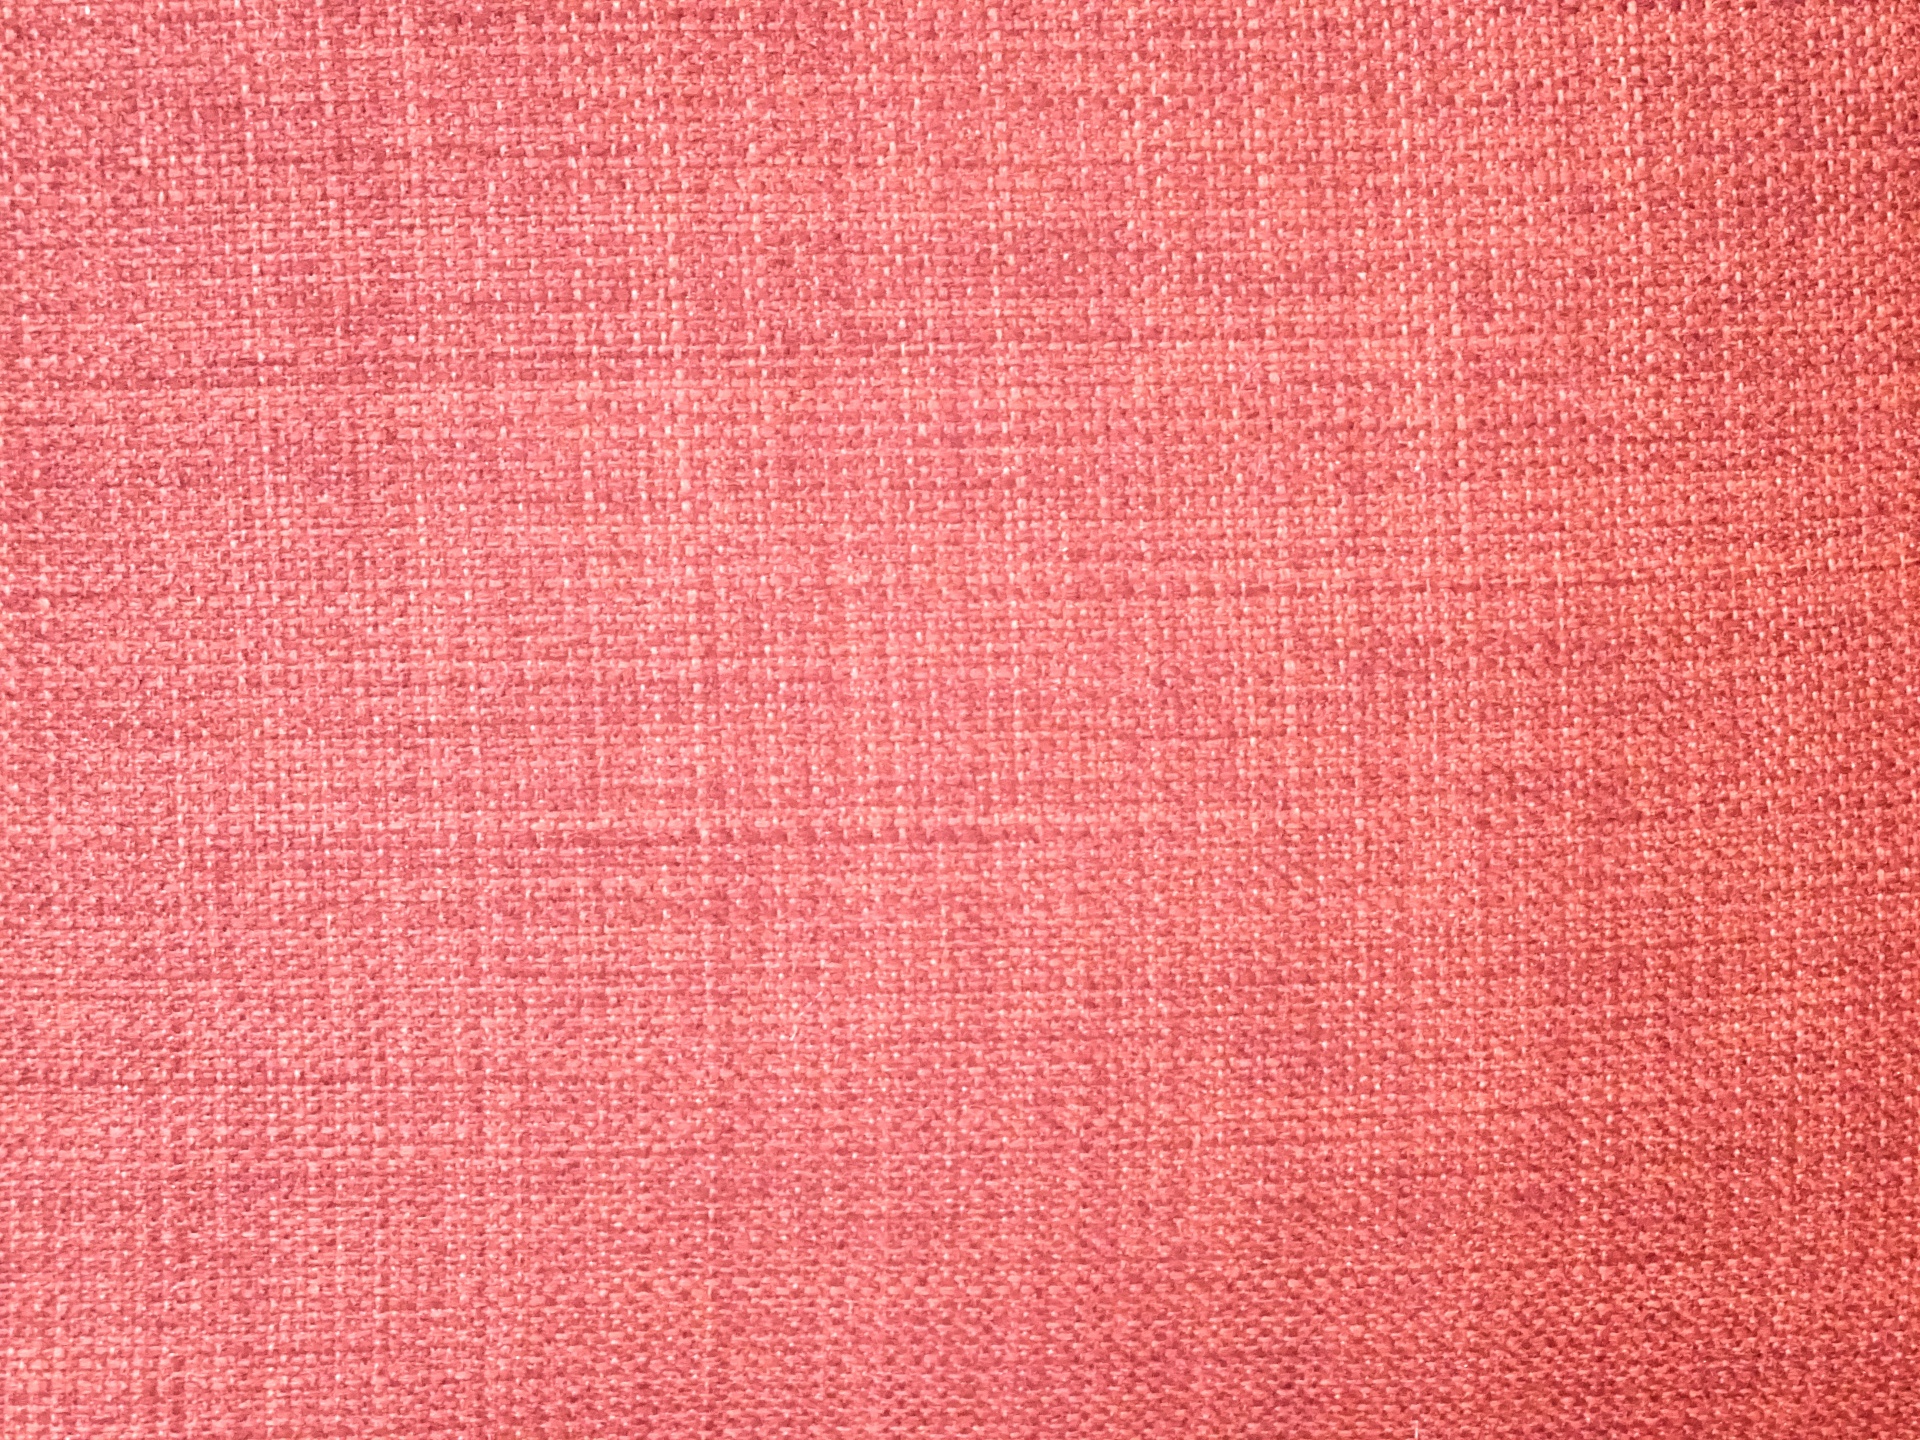 Fondo rosado de la tela con textura